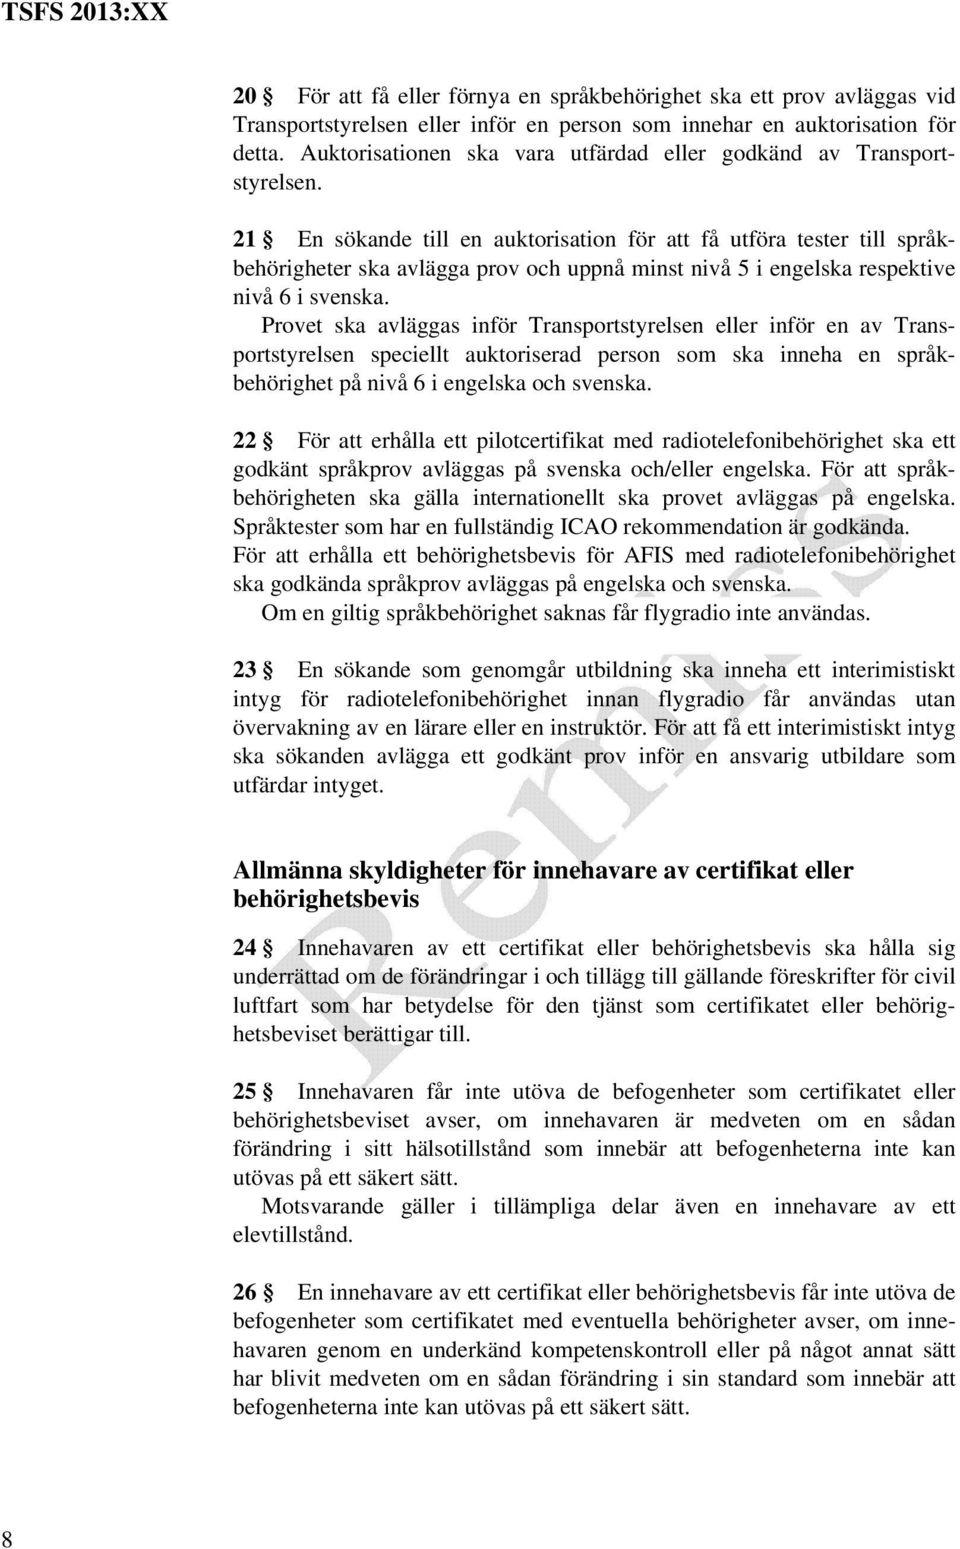 21 En sökande till en auktorisation för att få utföra tester till språkbehörigheter ska avlägga prov och uppnå minst nivå 5 i engelska respektive nivå 6 i svenska.